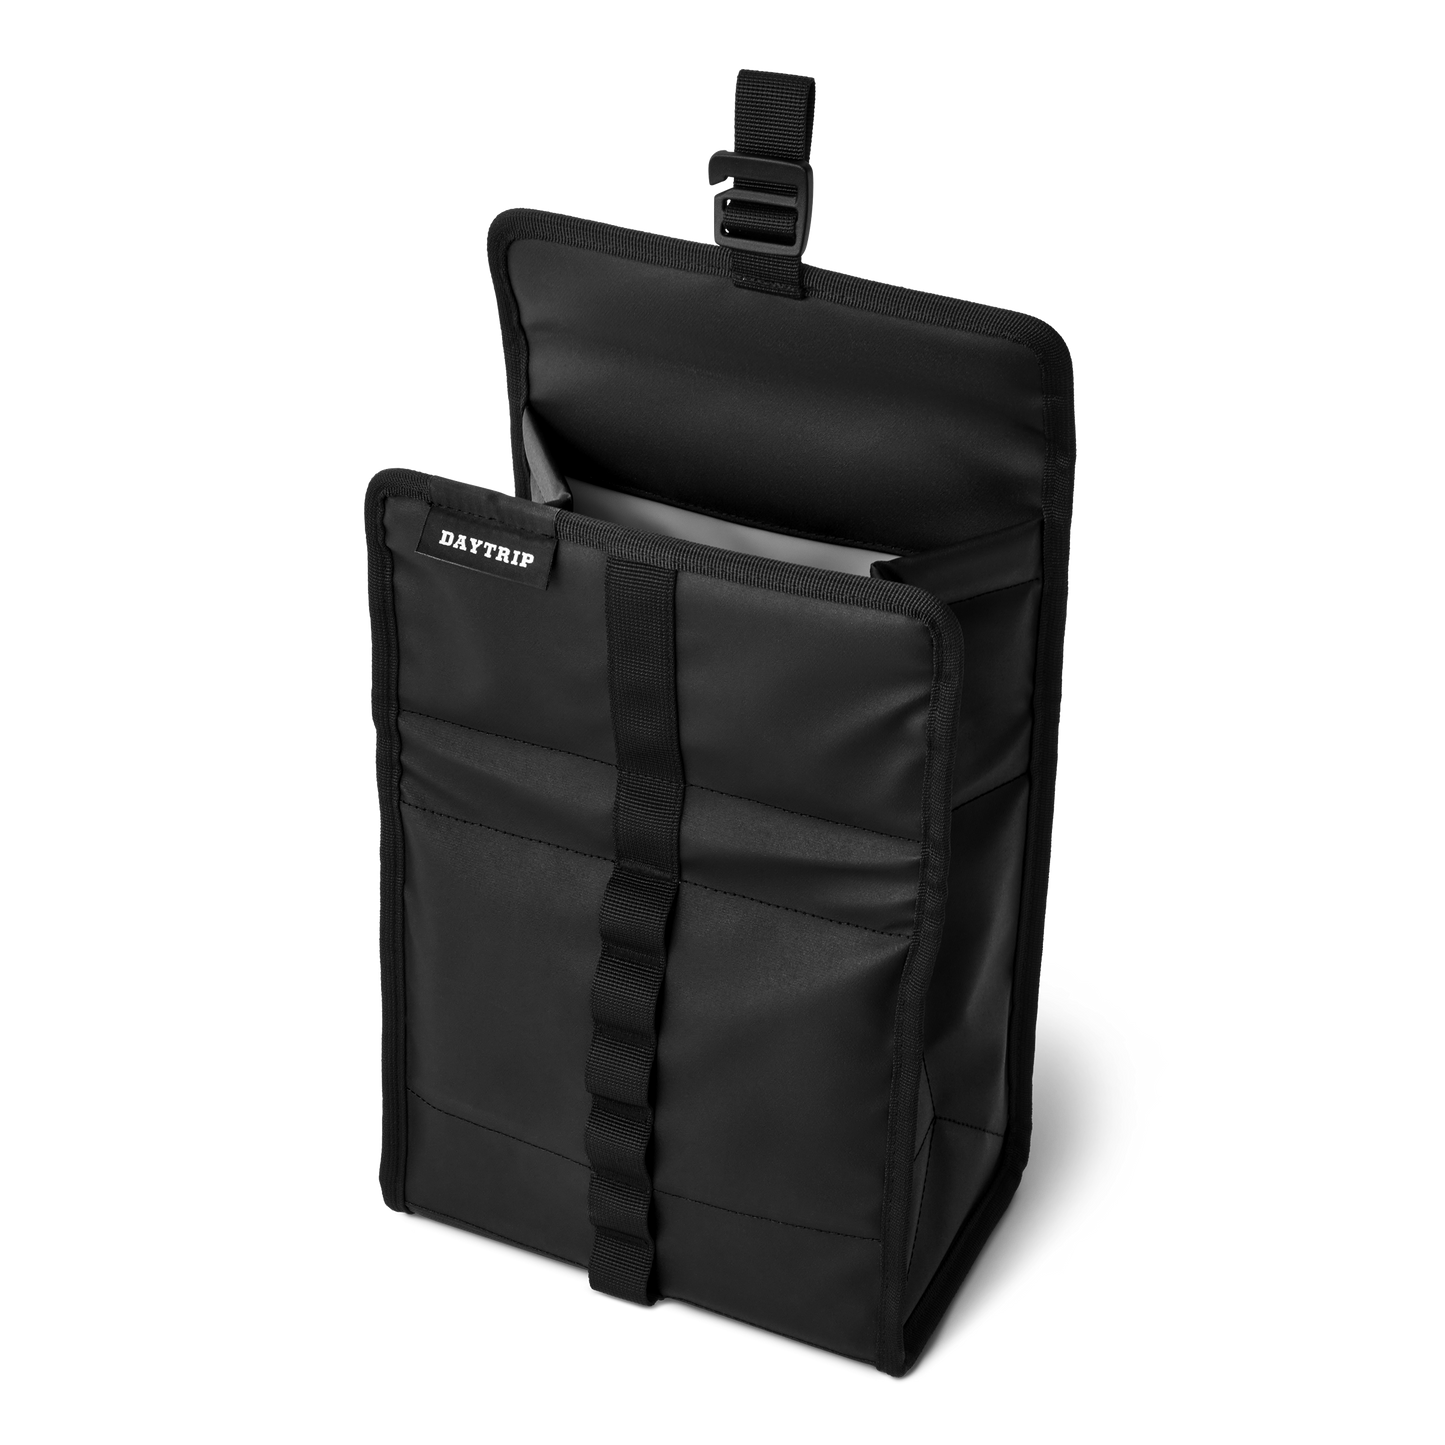 YETI DayTrip® Lunch Bag Black